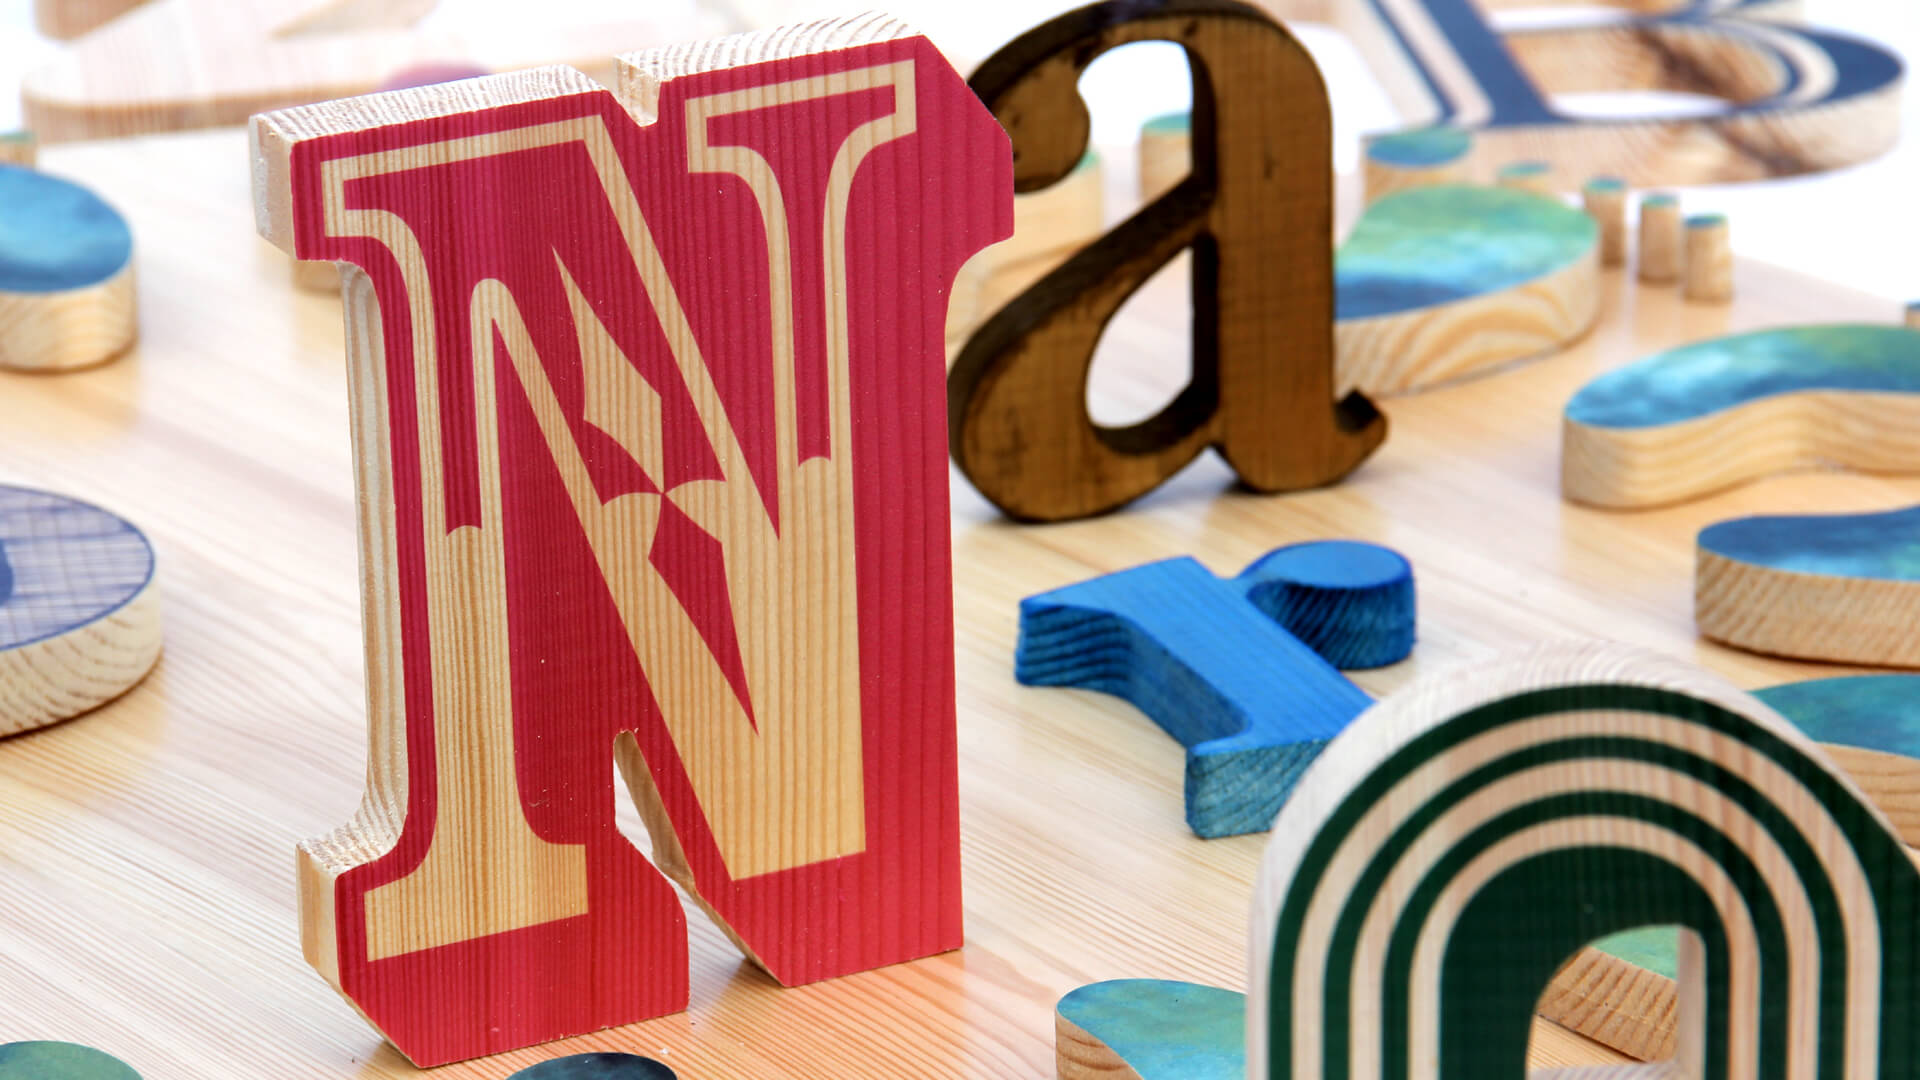 lettere di legno - lettere-di-legno-lettere-decorative-lettere-legno-lettere-compensato-lettere